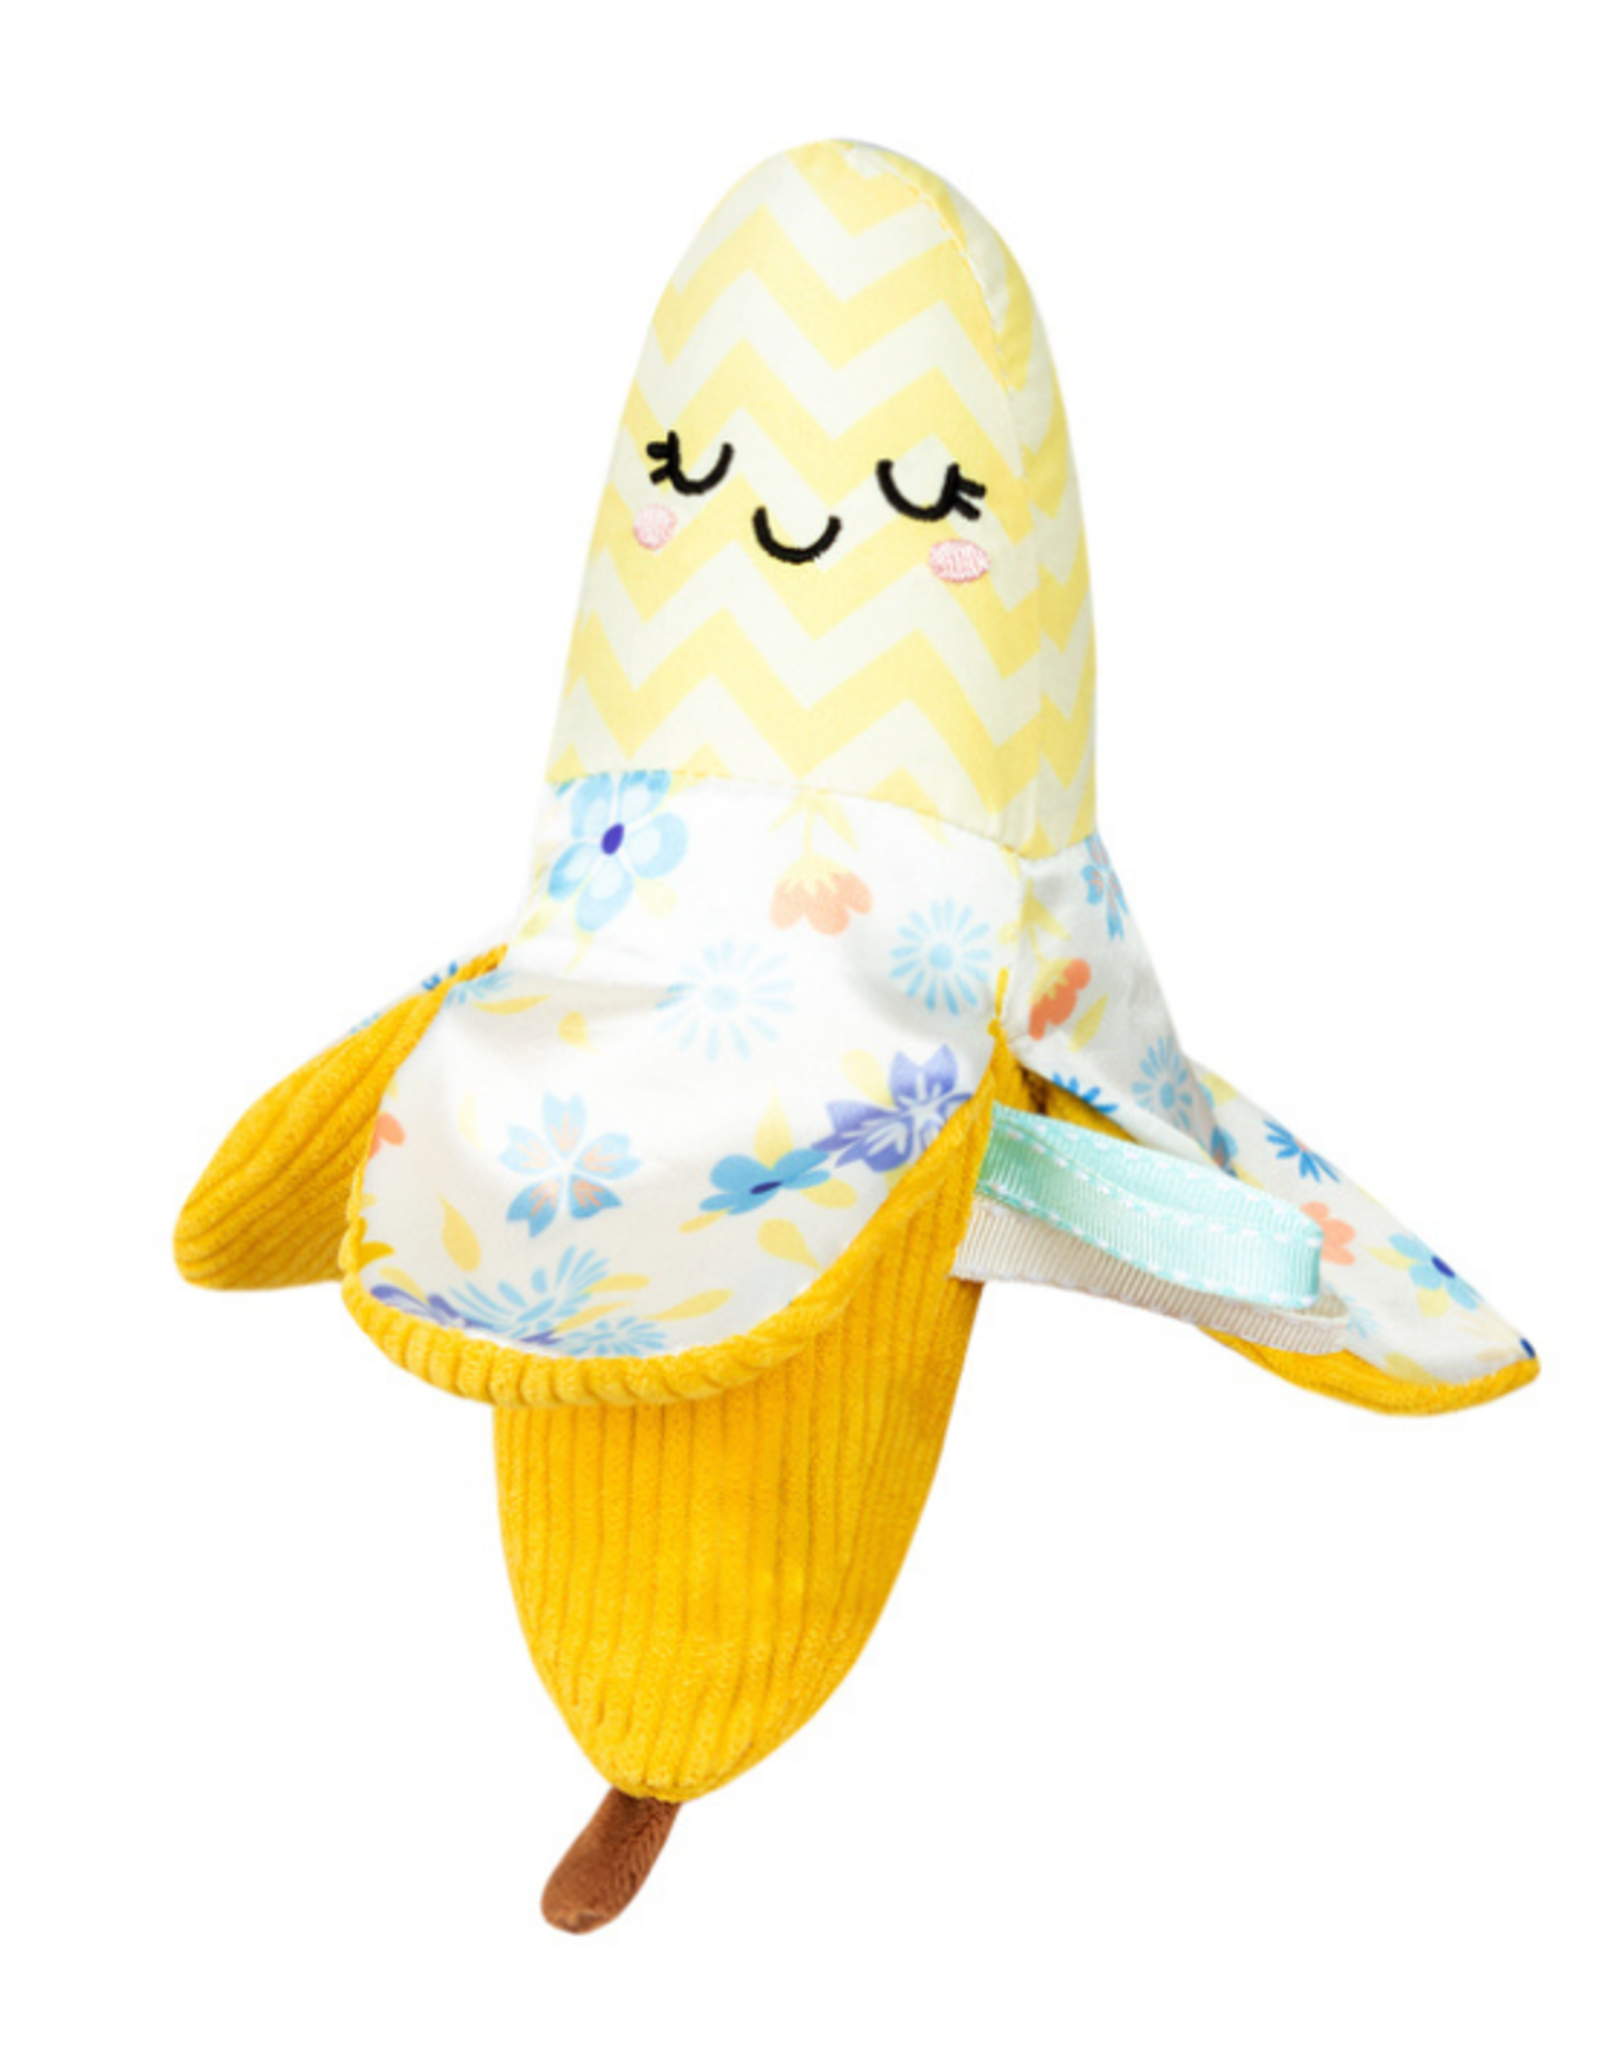 Squishable Squishable - Picnic Baby Banana